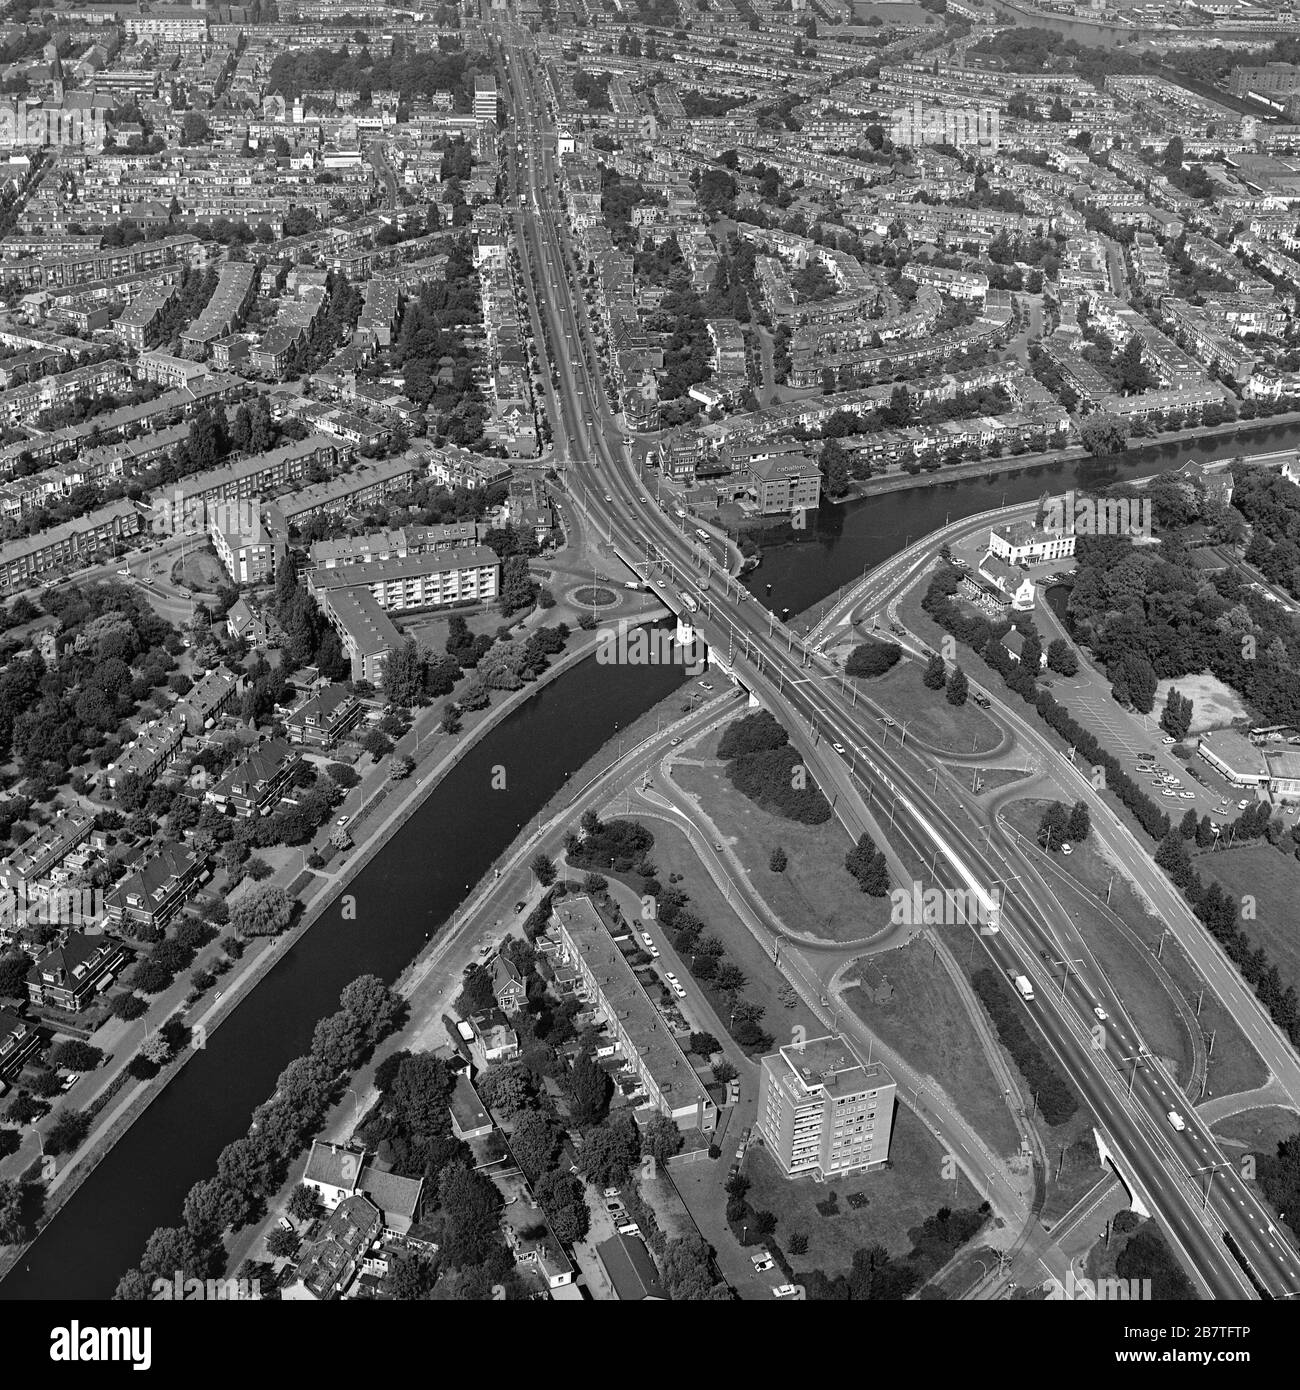 Den Haag, Holland, 29. August 1977: Historisches Luftbild in Schwarzweiß der Hoorn-Brücke von Delft nach den Haag Stockfoto